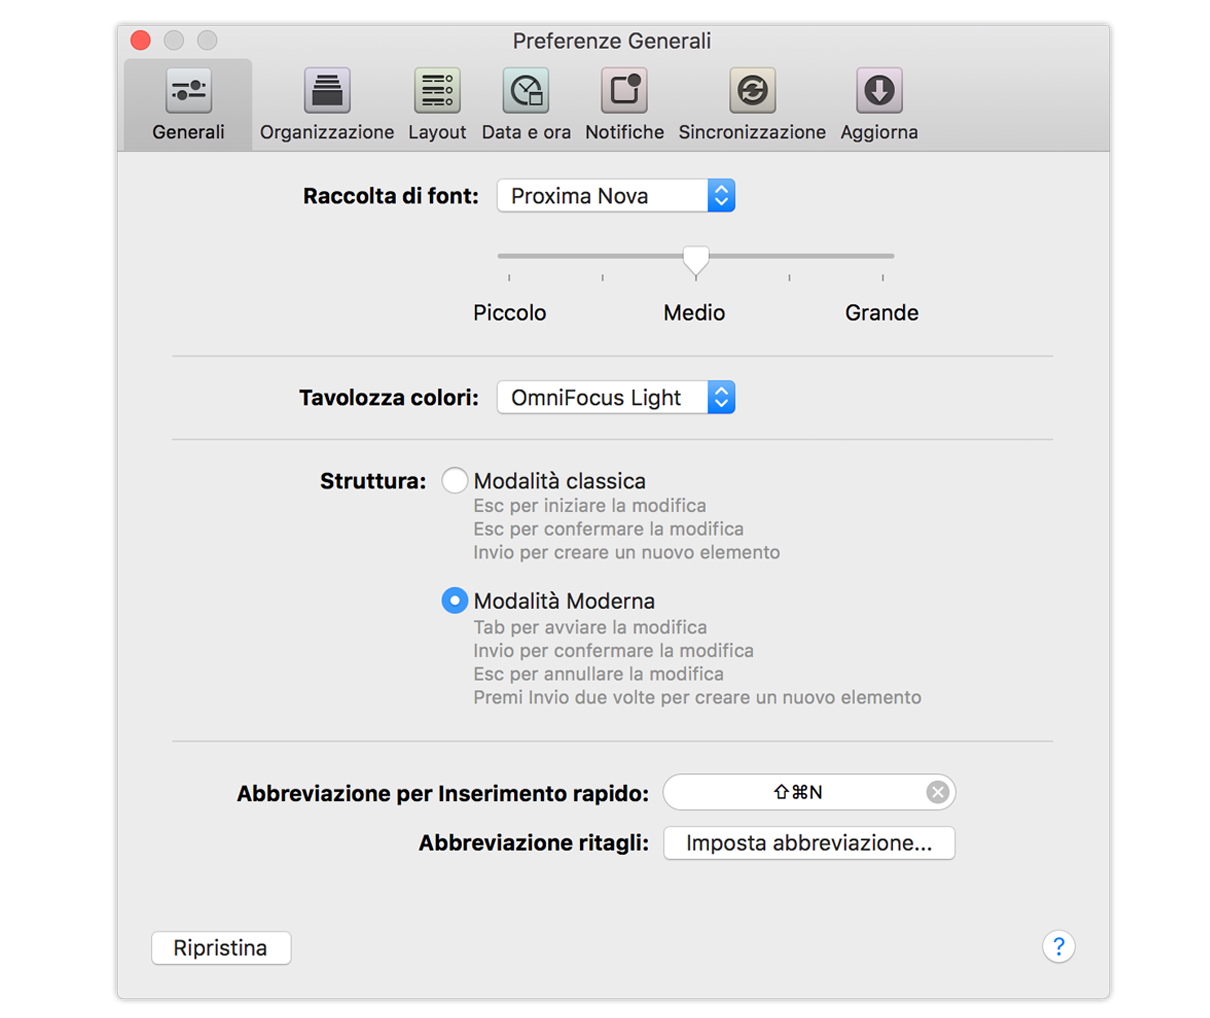 Preferenze Generali di OmniFocus 2 per Mac.